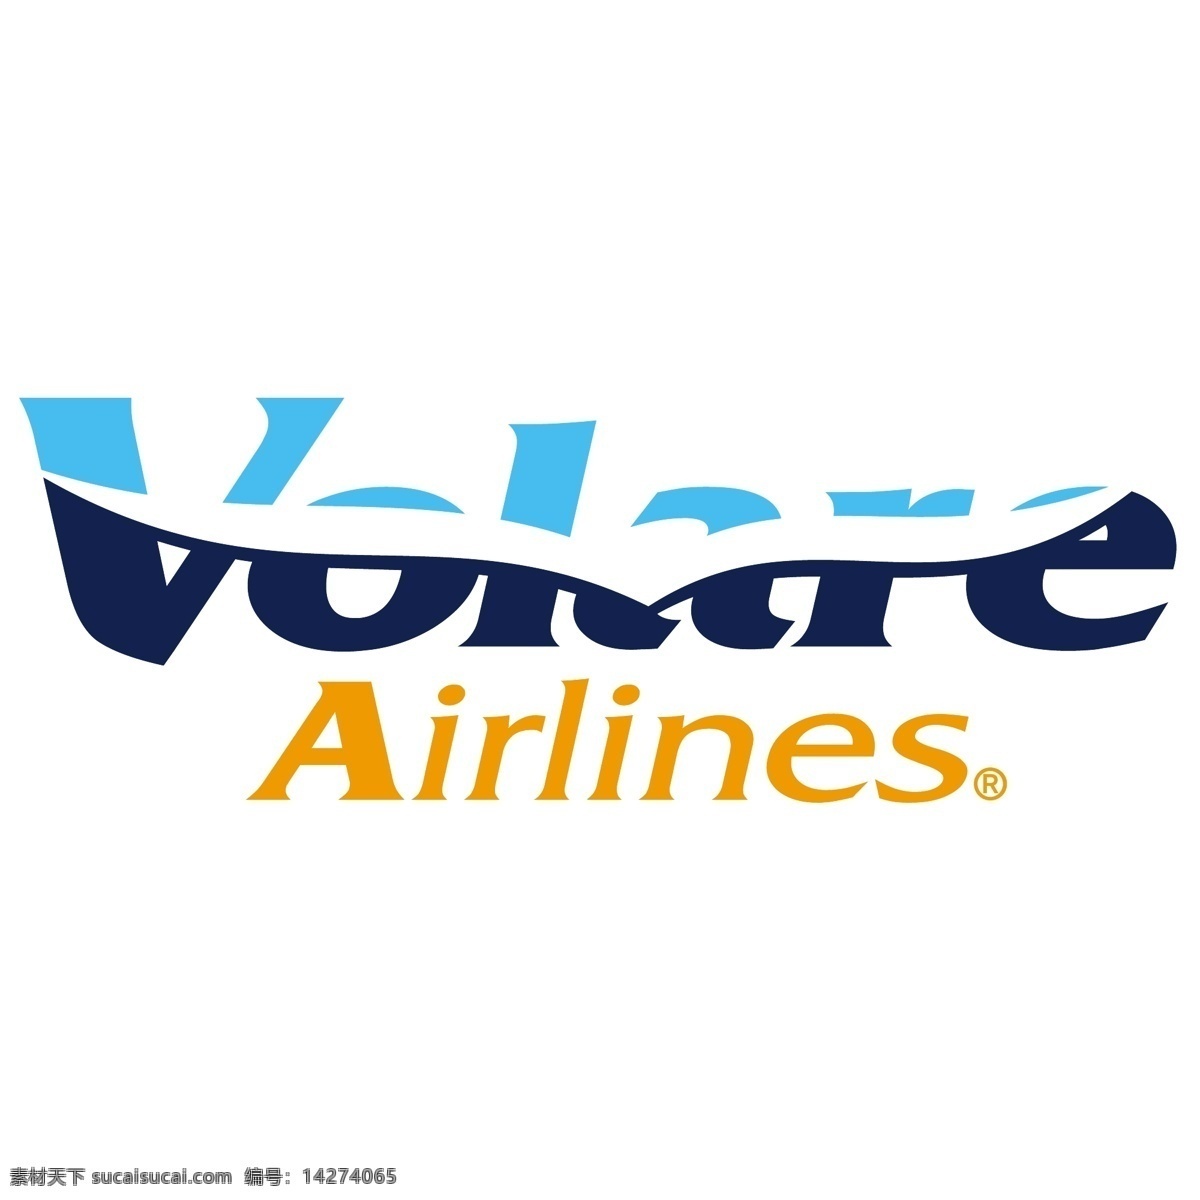 沃拉 尔 航空公司 标识 公司 免费 品牌 品牌标识 商标 矢量标志下载 免费矢量标识 矢量 psd源文件 logo设计